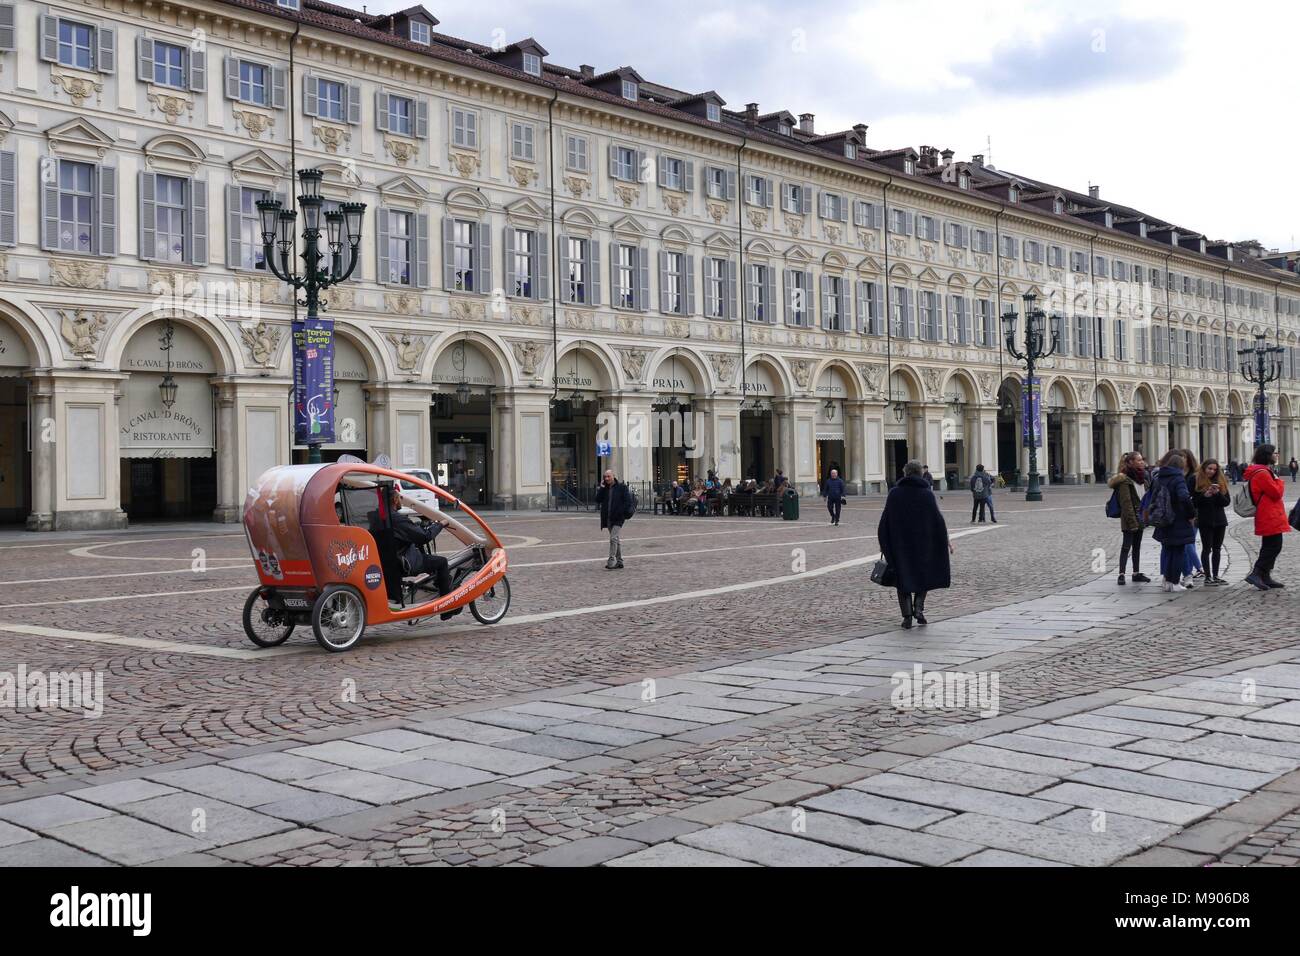 Die moderne elektrische Rikscha Veloleo umweltfreundlich mit persönlichen Treiber für Stadtrundfahrten Panoramablick in aulic San Carlo square Turin Italien Stockfoto